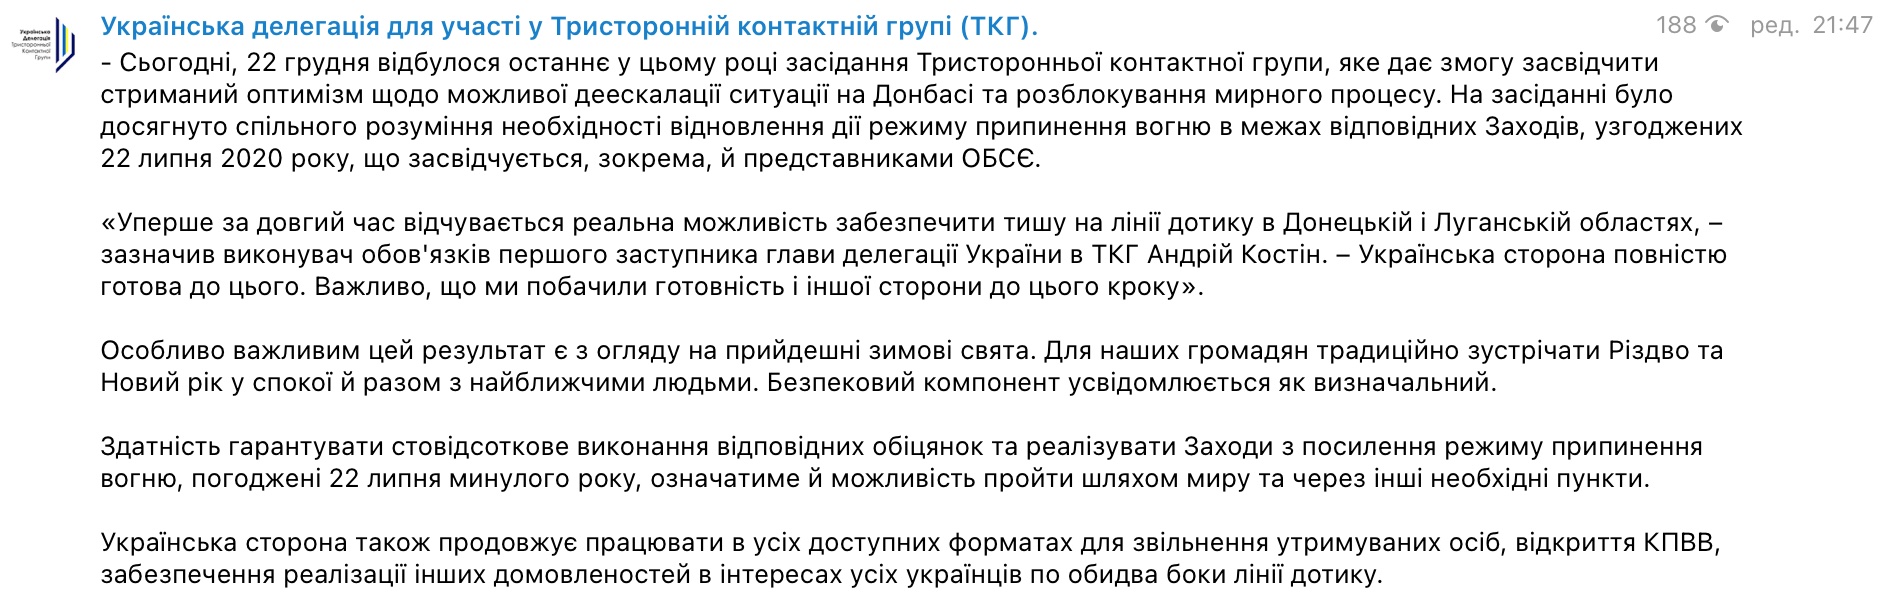 Праздники должны быть мирными. На встрече ТКГ по Донбассу договорились не стрелять – Ермак